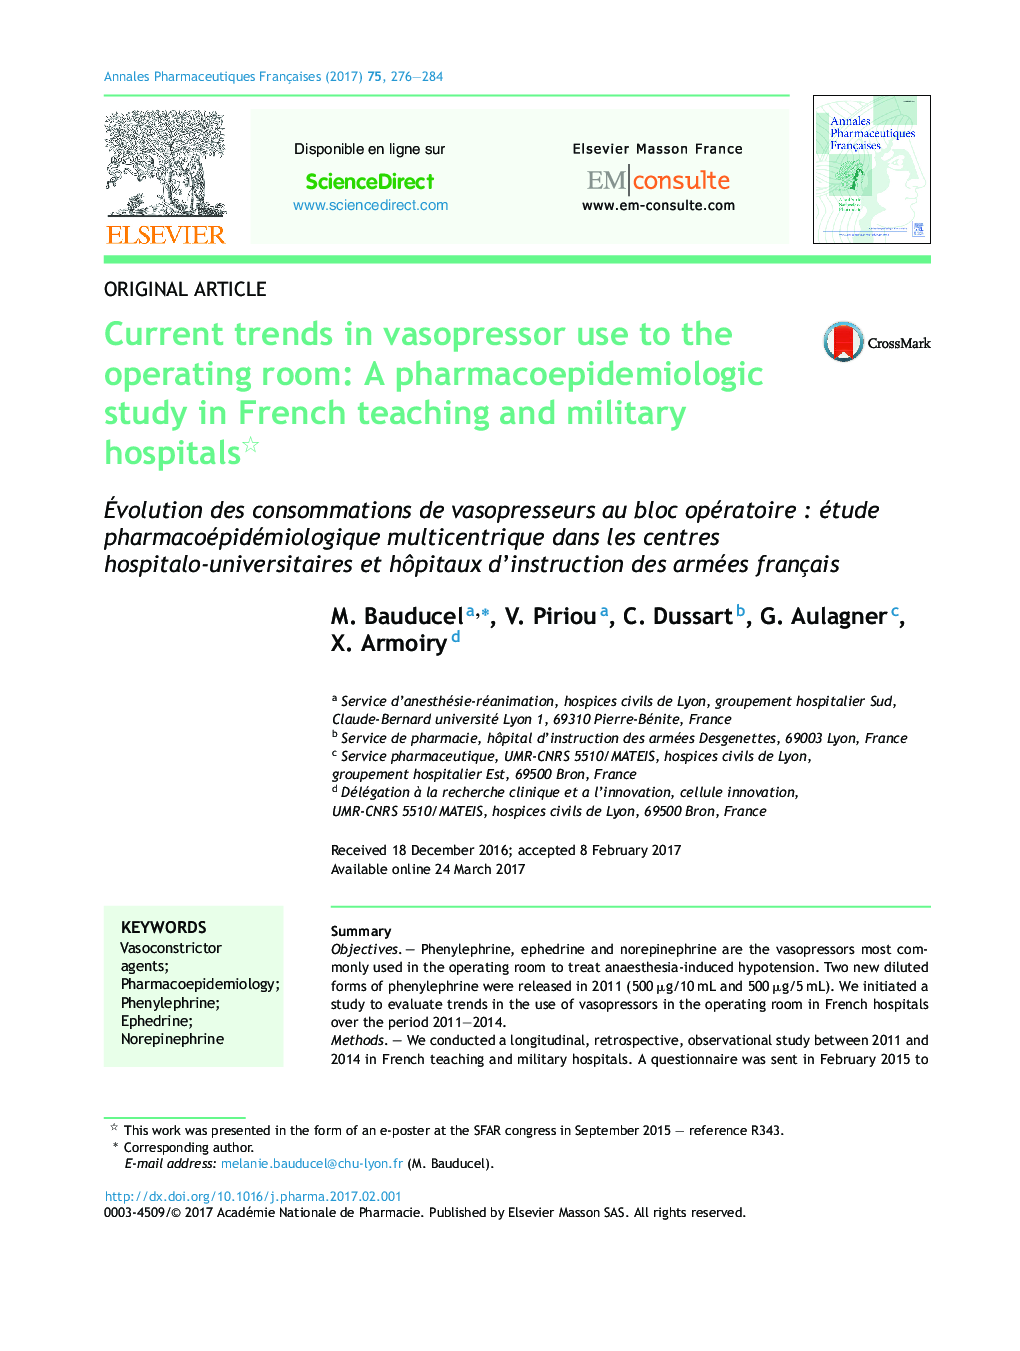 روند فعلی استفاده از وازوپرسور به اتاق عمل: یک مطالعه فارماکوپیدمیولوژیک در آموزش فرانسه و بیمارستان های نظامی 